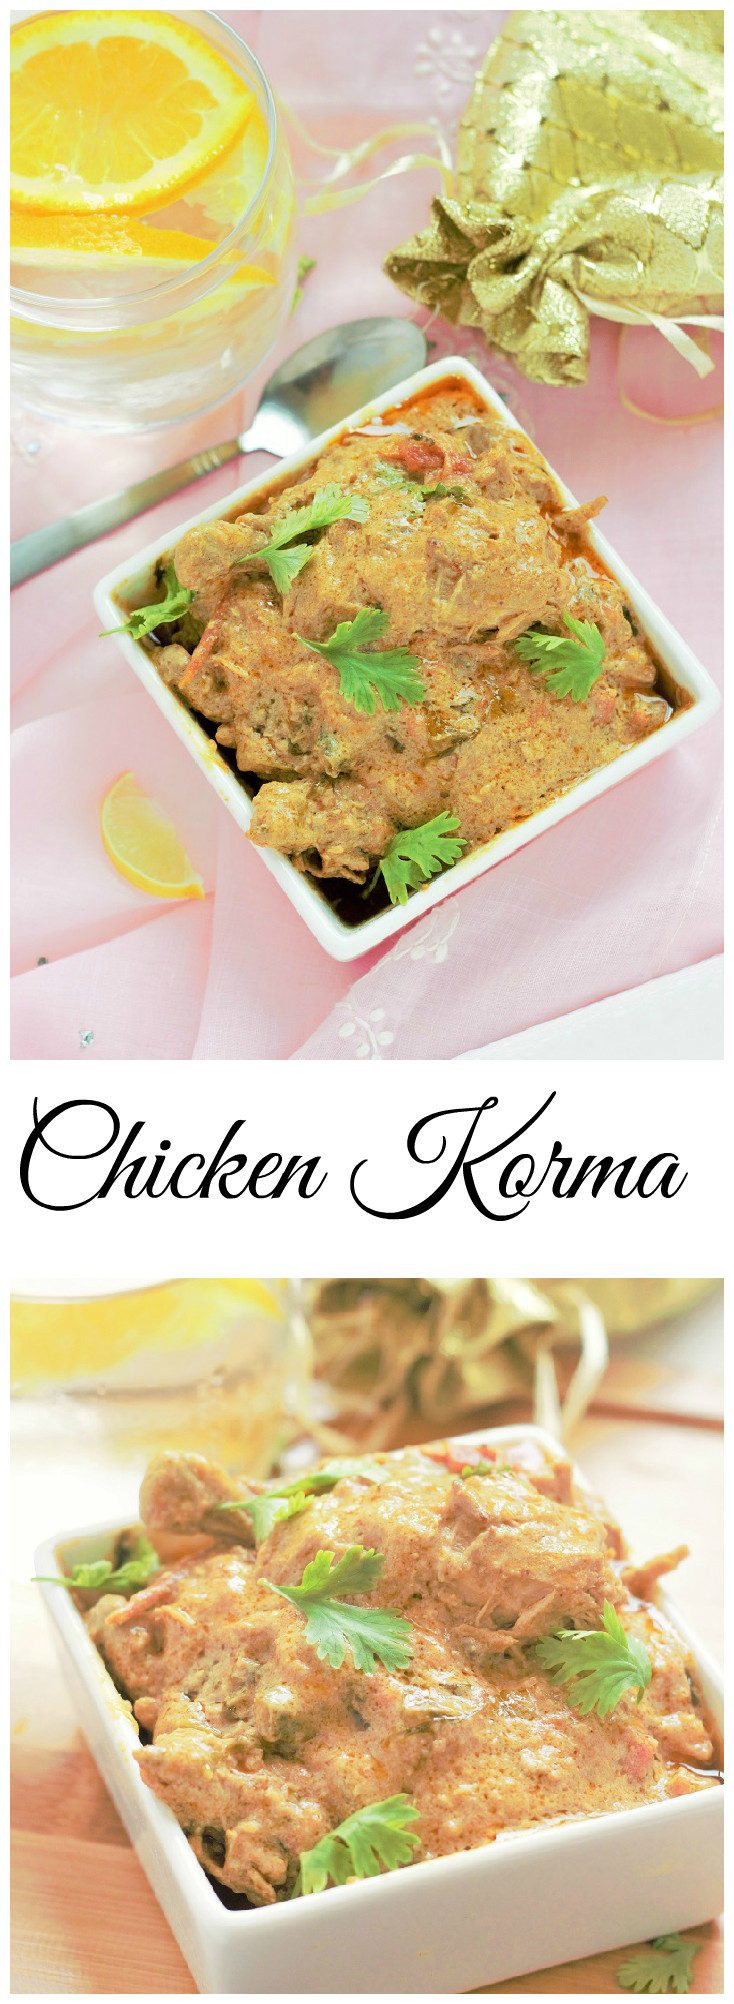 Chicken Korma recipe